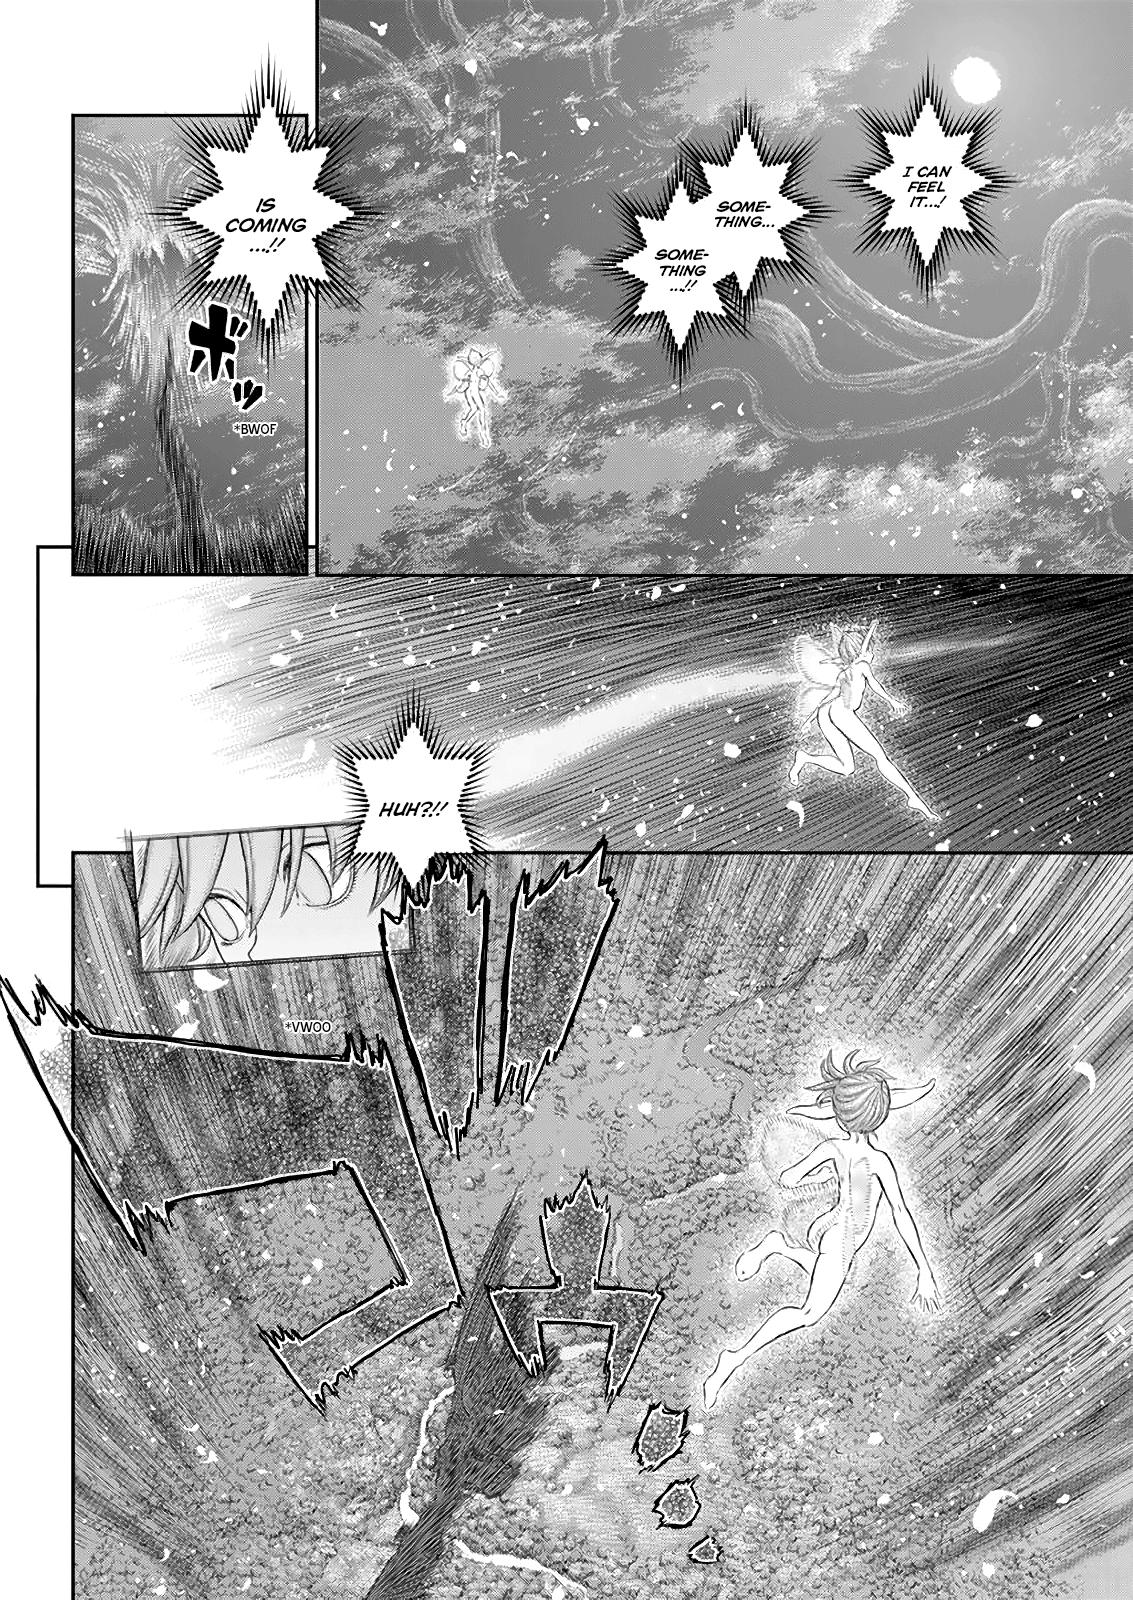 Berserk Manga Chapter 366 image 12